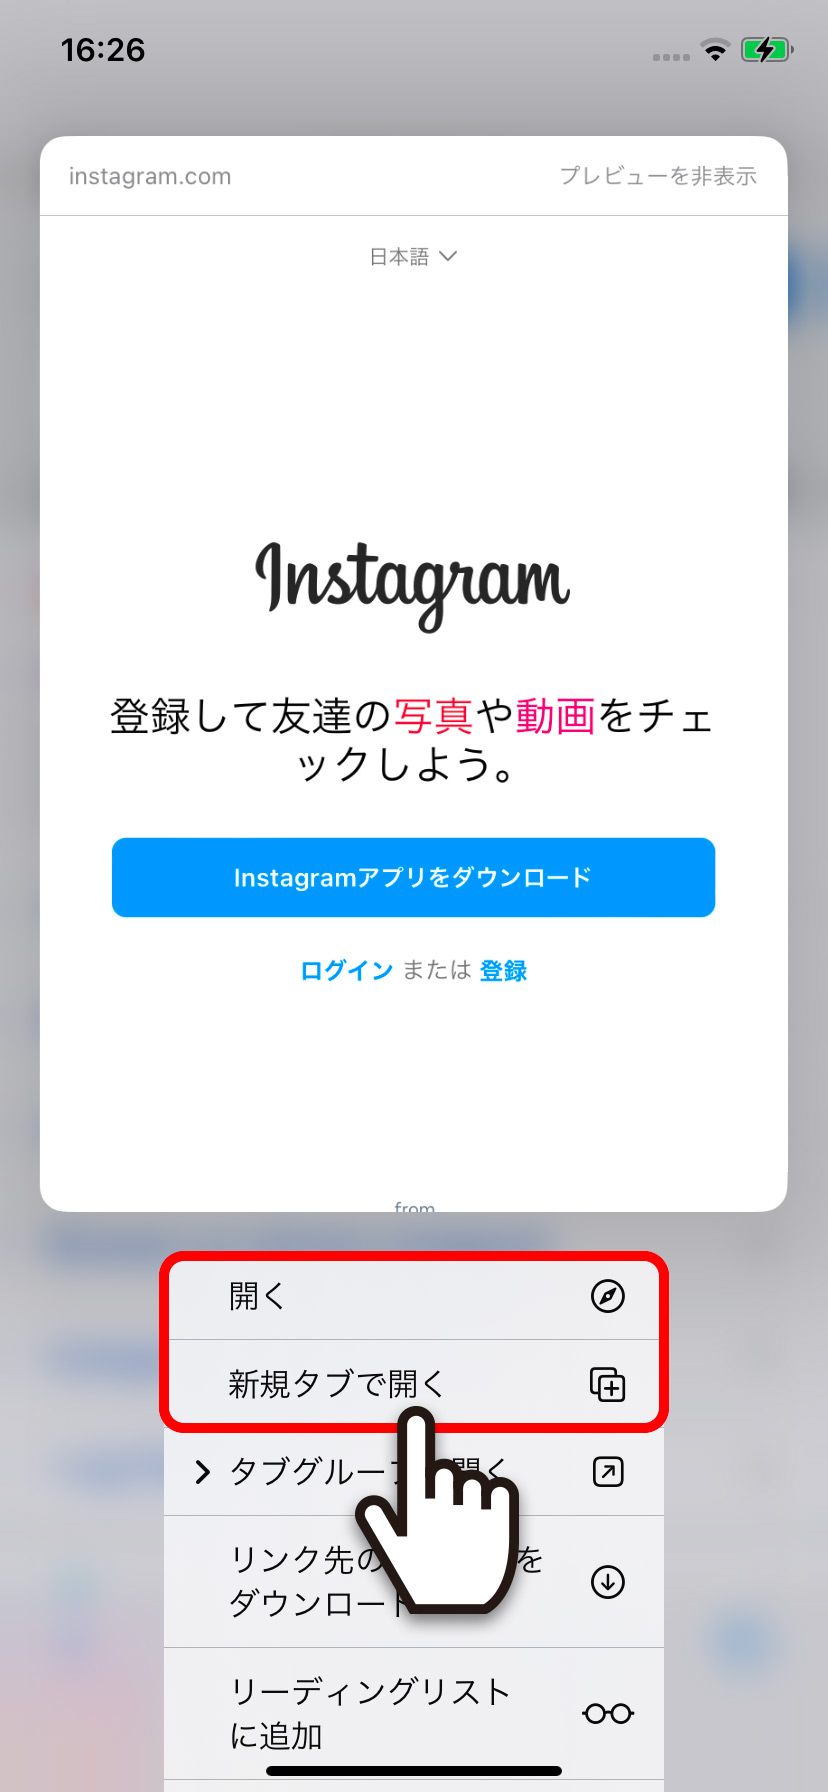 【iPhone】Instagram(インスタグラム)をブラウザで開く